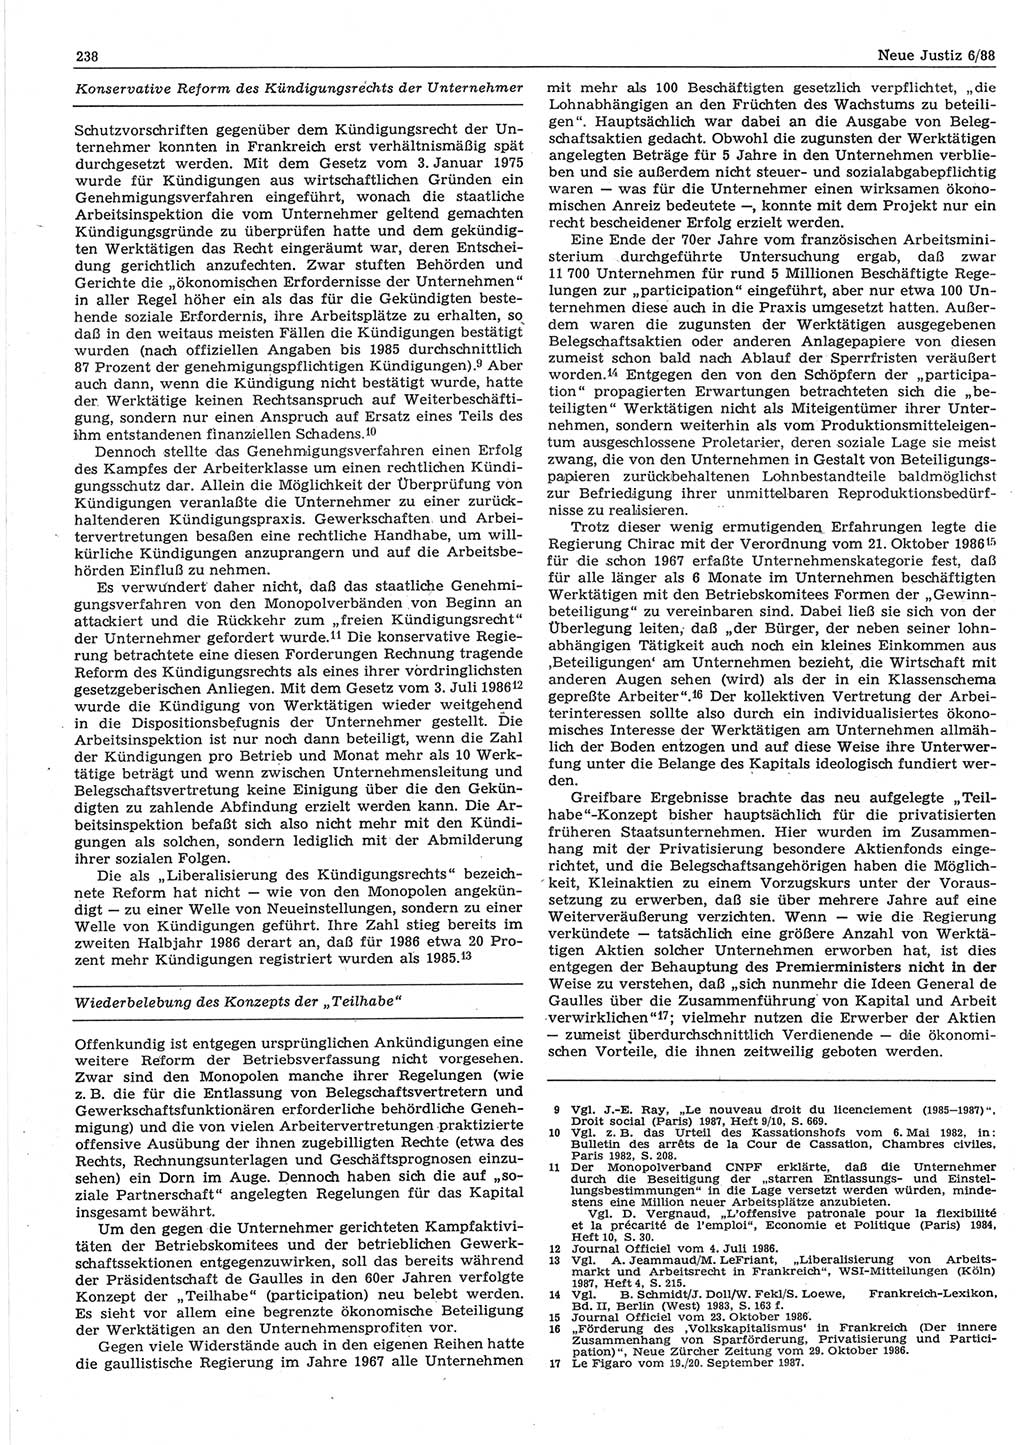 Neue Justiz (NJ), Zeitschrift für sozialistisches Recht und Gesetzlichkeit [Deutsche Demokratische Republik (DDR)], 42. Jahrgang 1988, Seite 238 (NJ DDR 1988, S. 238)